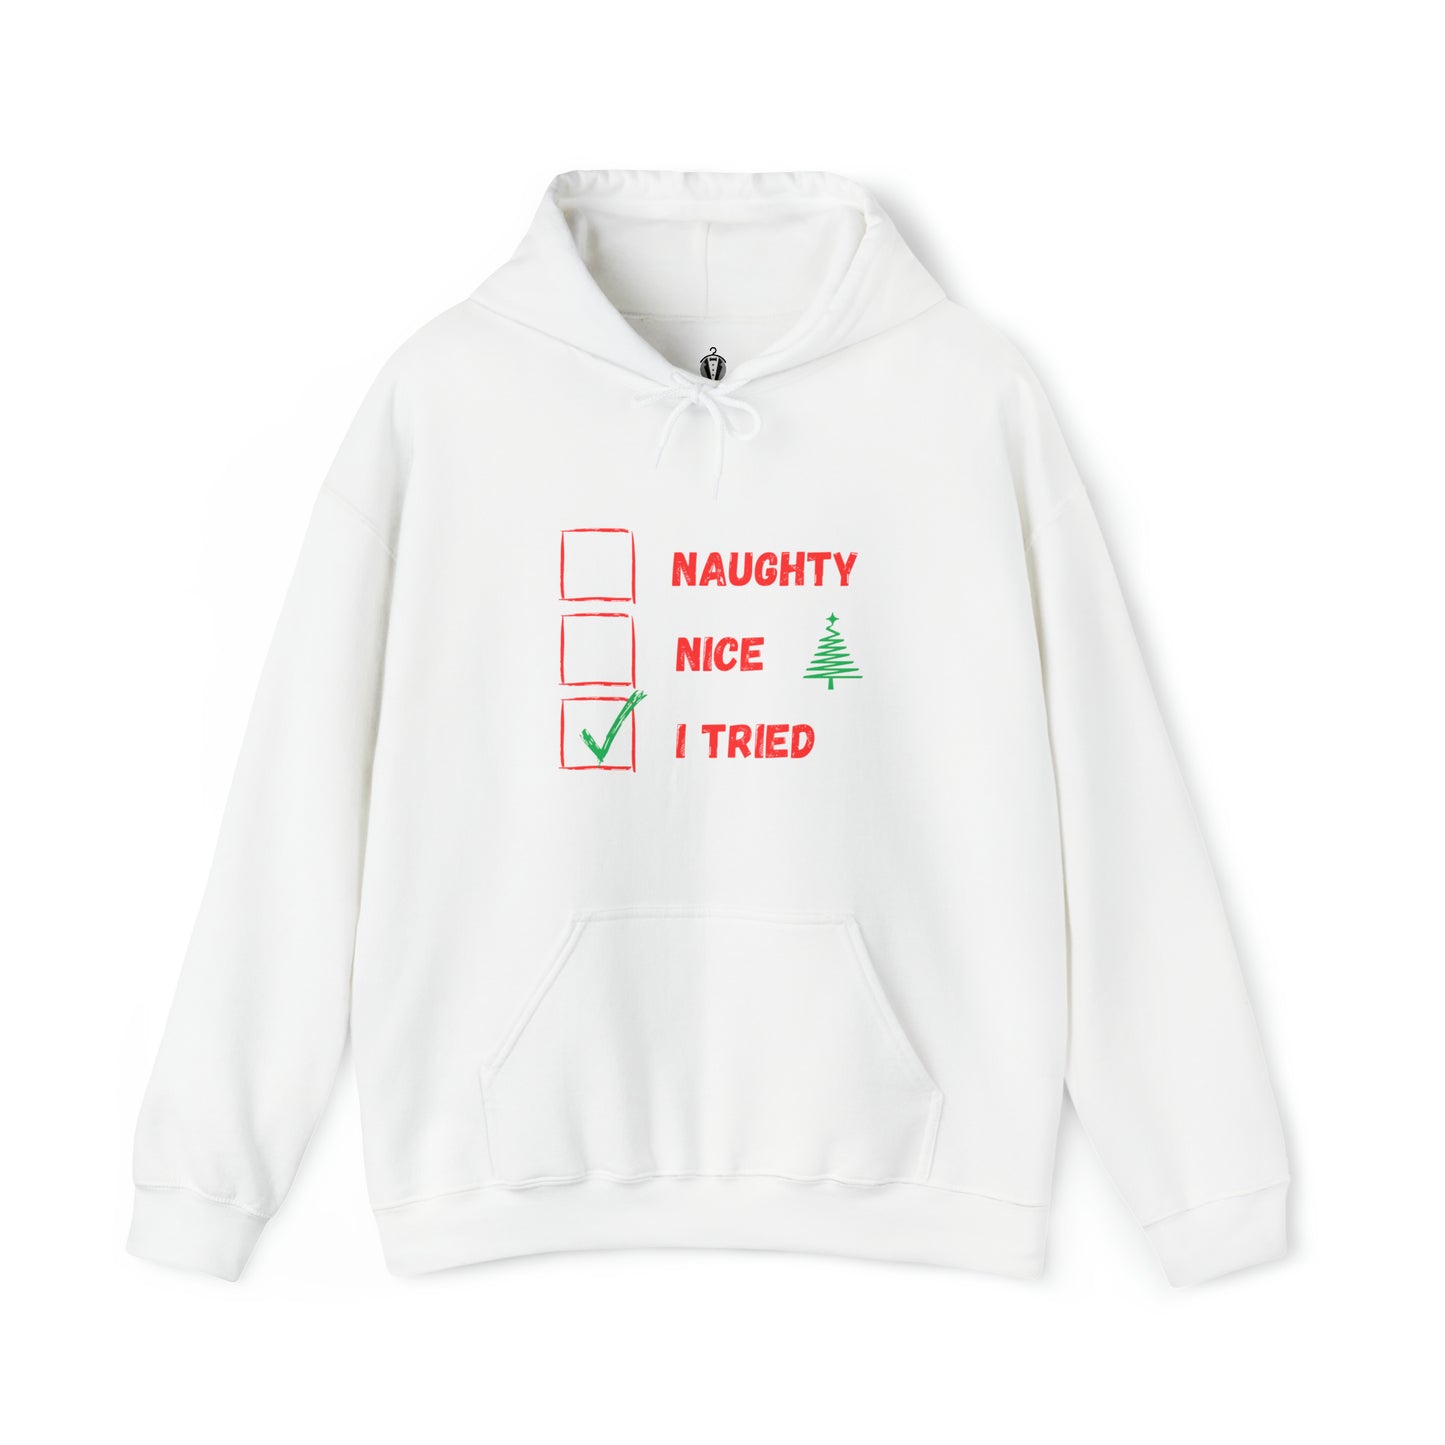 "I tried" - hoodie